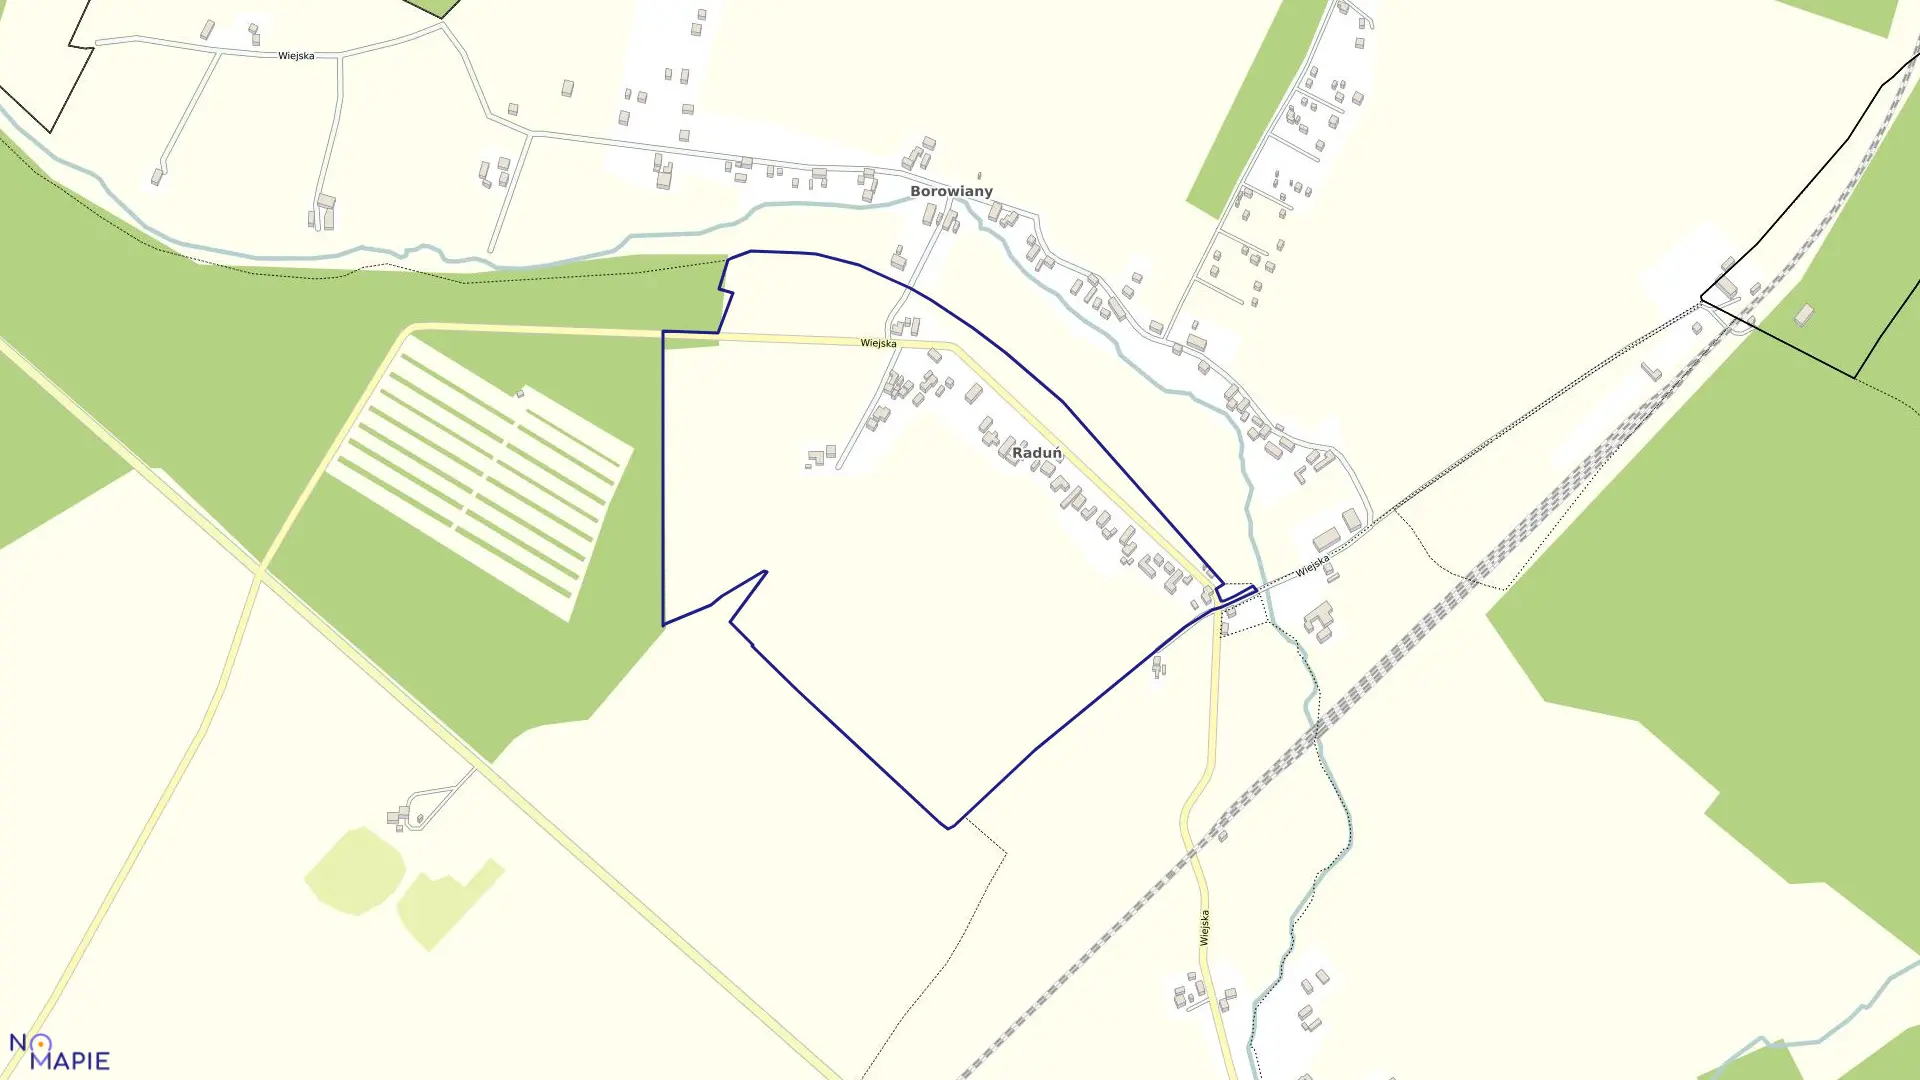 Mapa obrębu Raduń w gminie Wielowieś